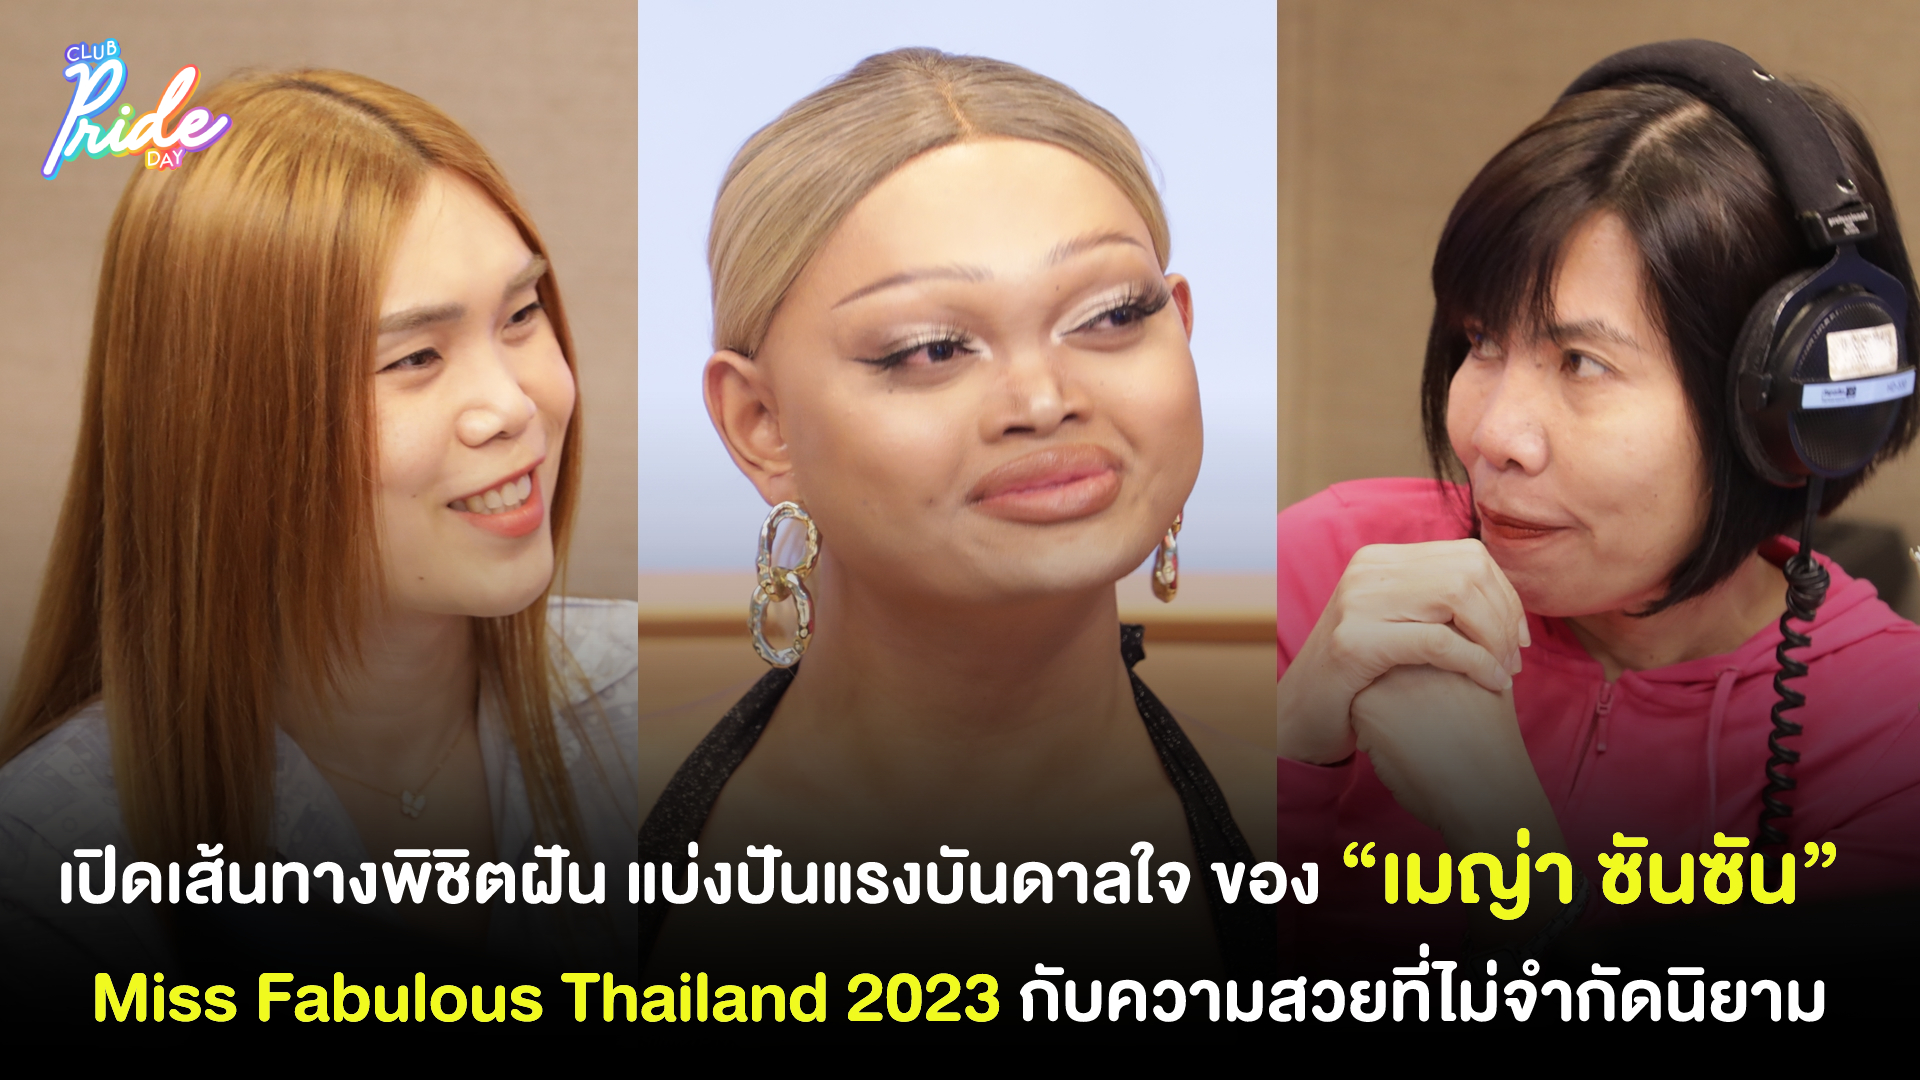 เปิดเส้นทางพิชิตฝัน แบ่งปันแรงบันดาลใจ ของ “เมญ่า ซันซัน” Miss Fabulous Thailand 2023 กับความสวยที่ไม่จำกัดนิยาม